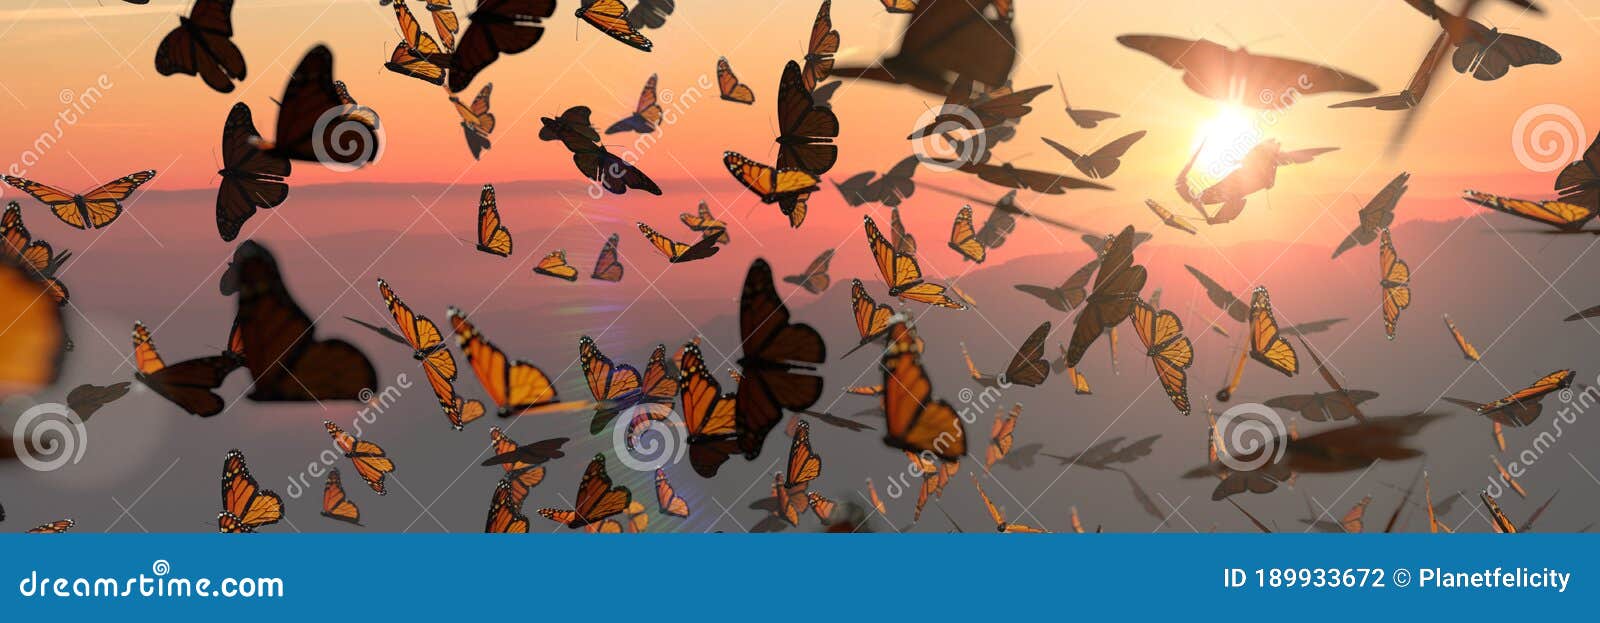 swarm of monarch butterflies, danaus plexippus group during sunset